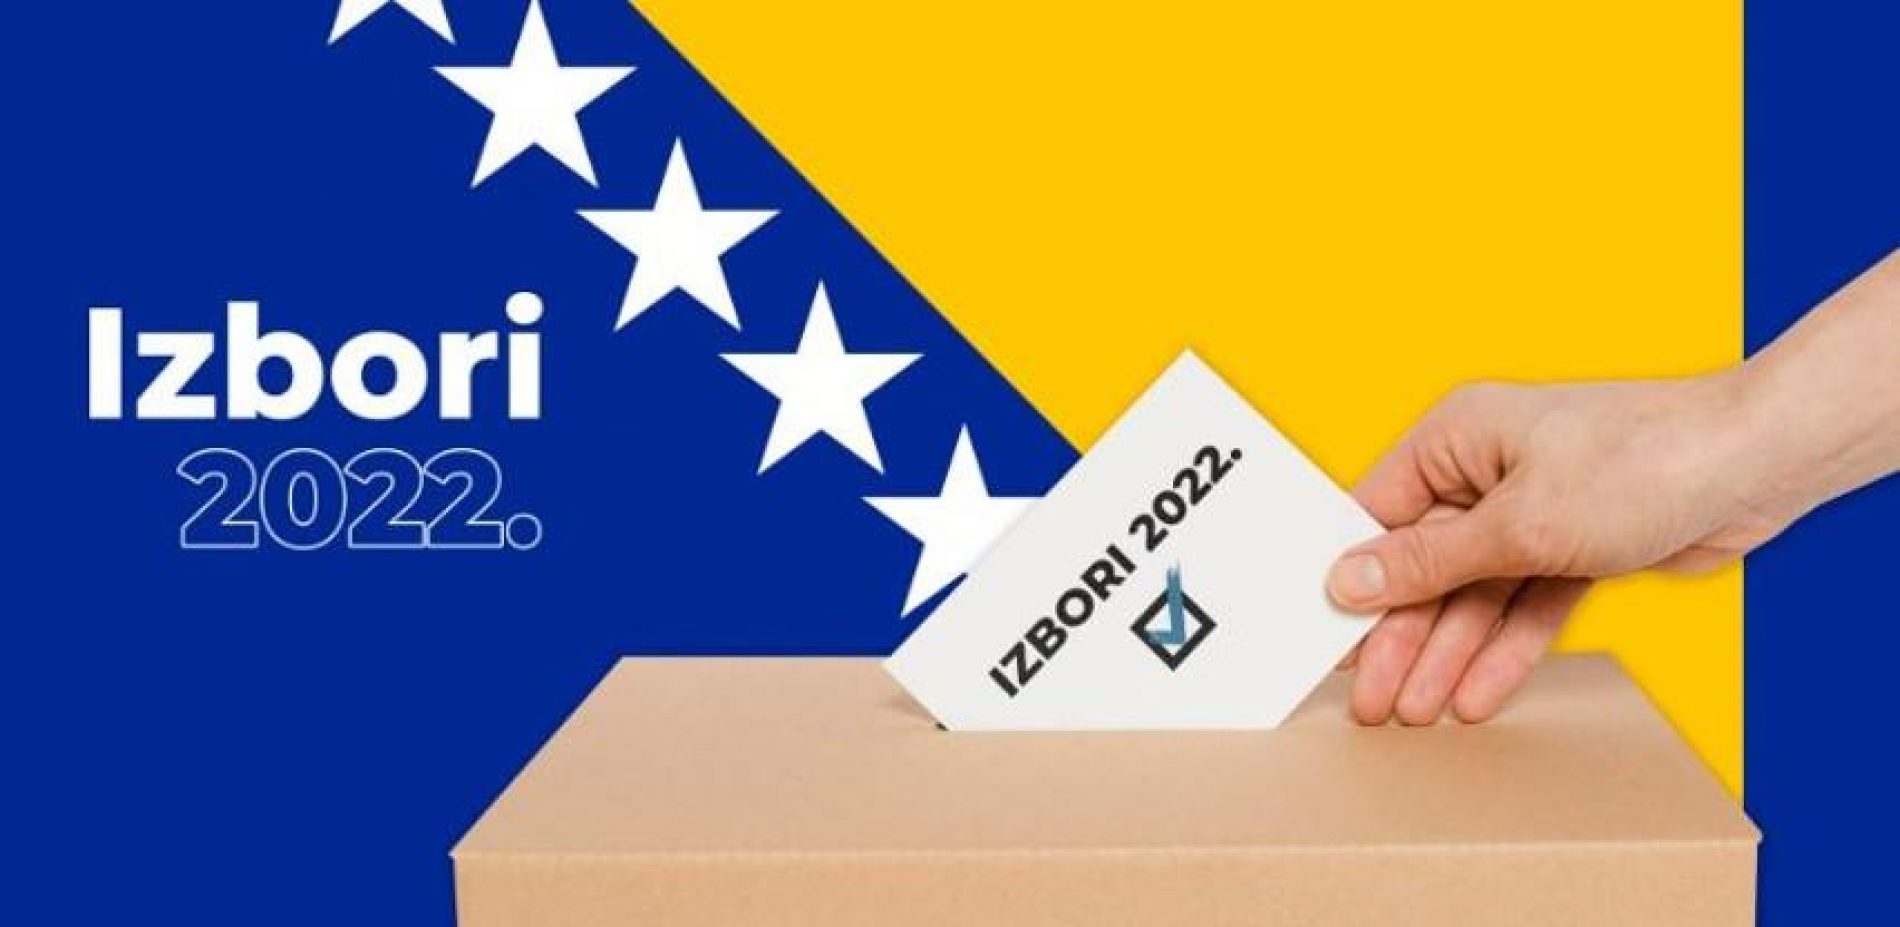 Izbori: SDA vodeća za državni i federalni parlament, kao i u svim kantonima s bošnjačkom većinom